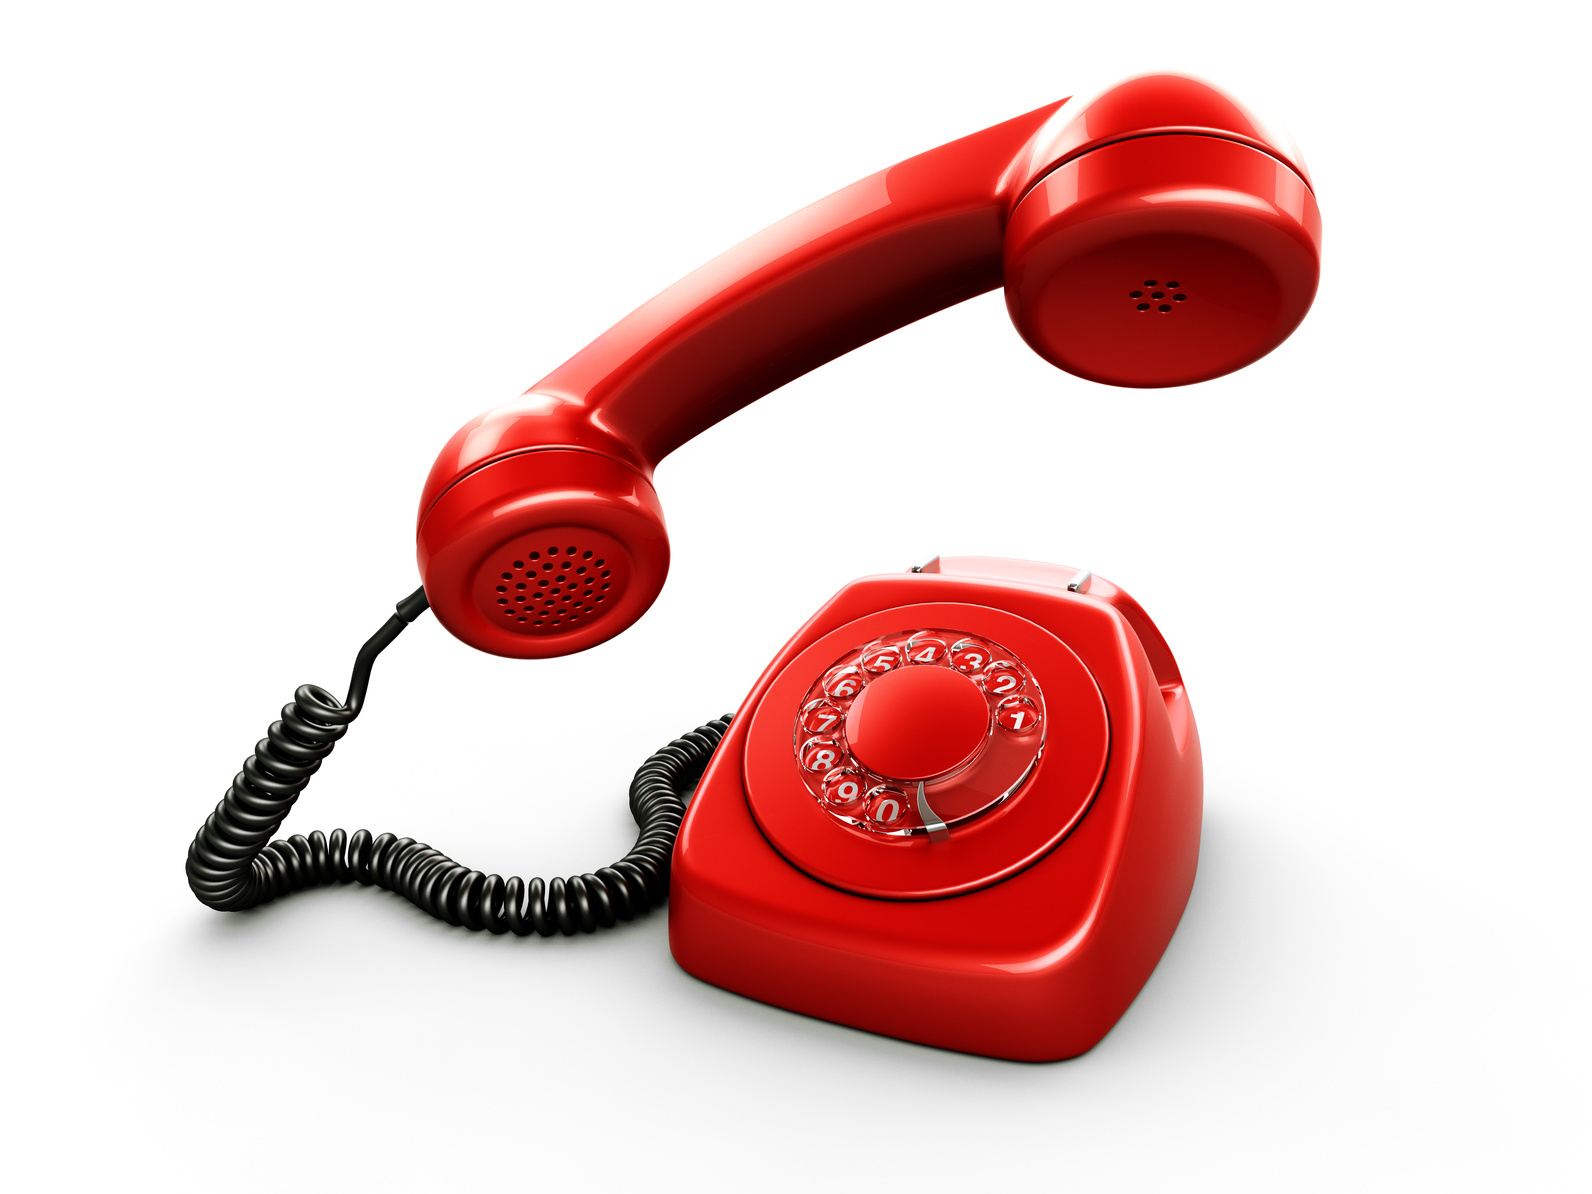 Телефон горячей д. Телефон доверия. Телефонная трубка. Красная телефонная трубка. Изображение телефона.